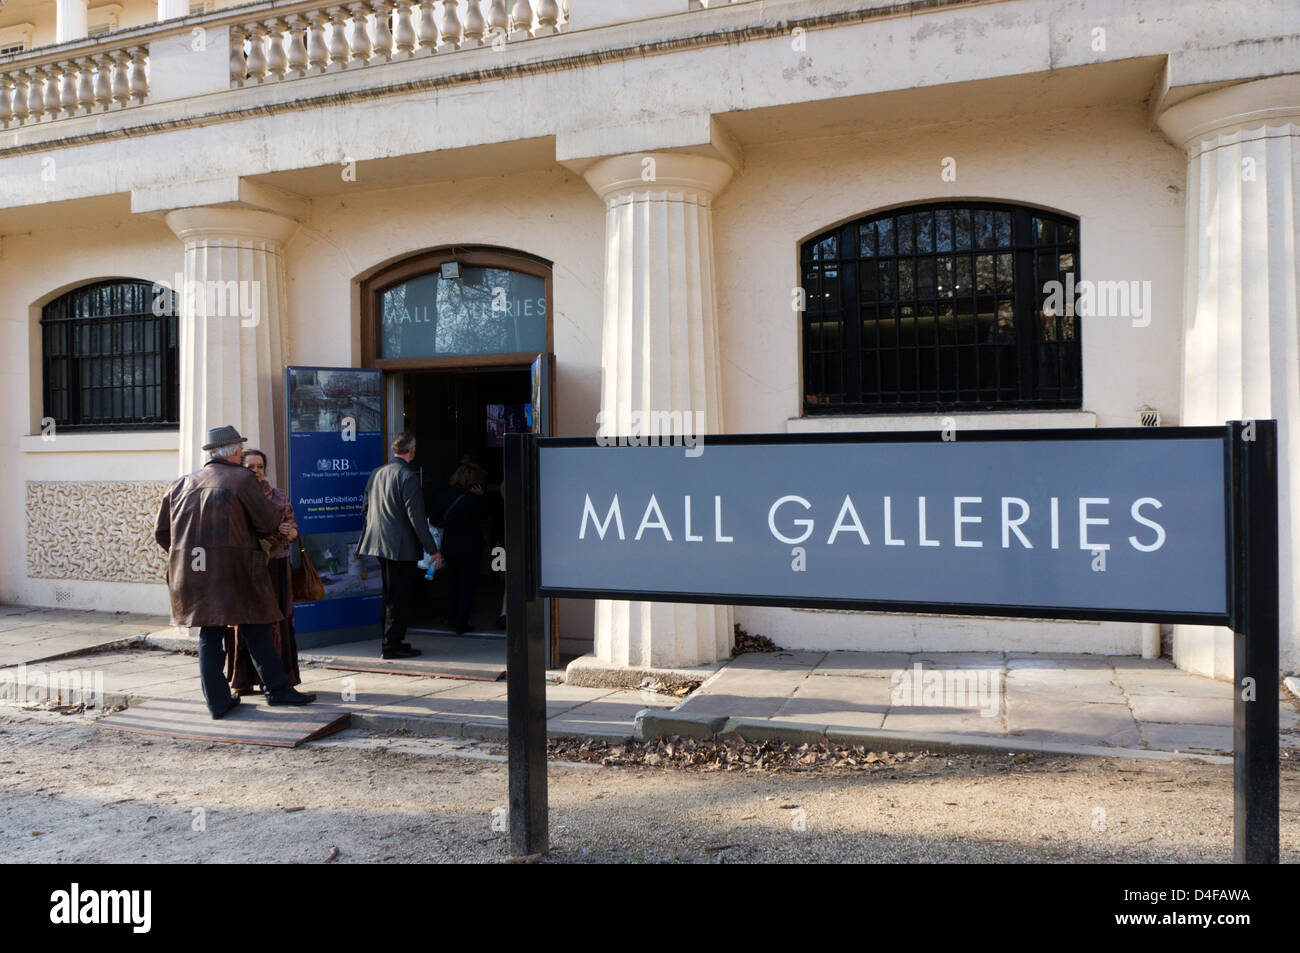 Firmar fuera del Mall Galleries, Londres. Foto de stock